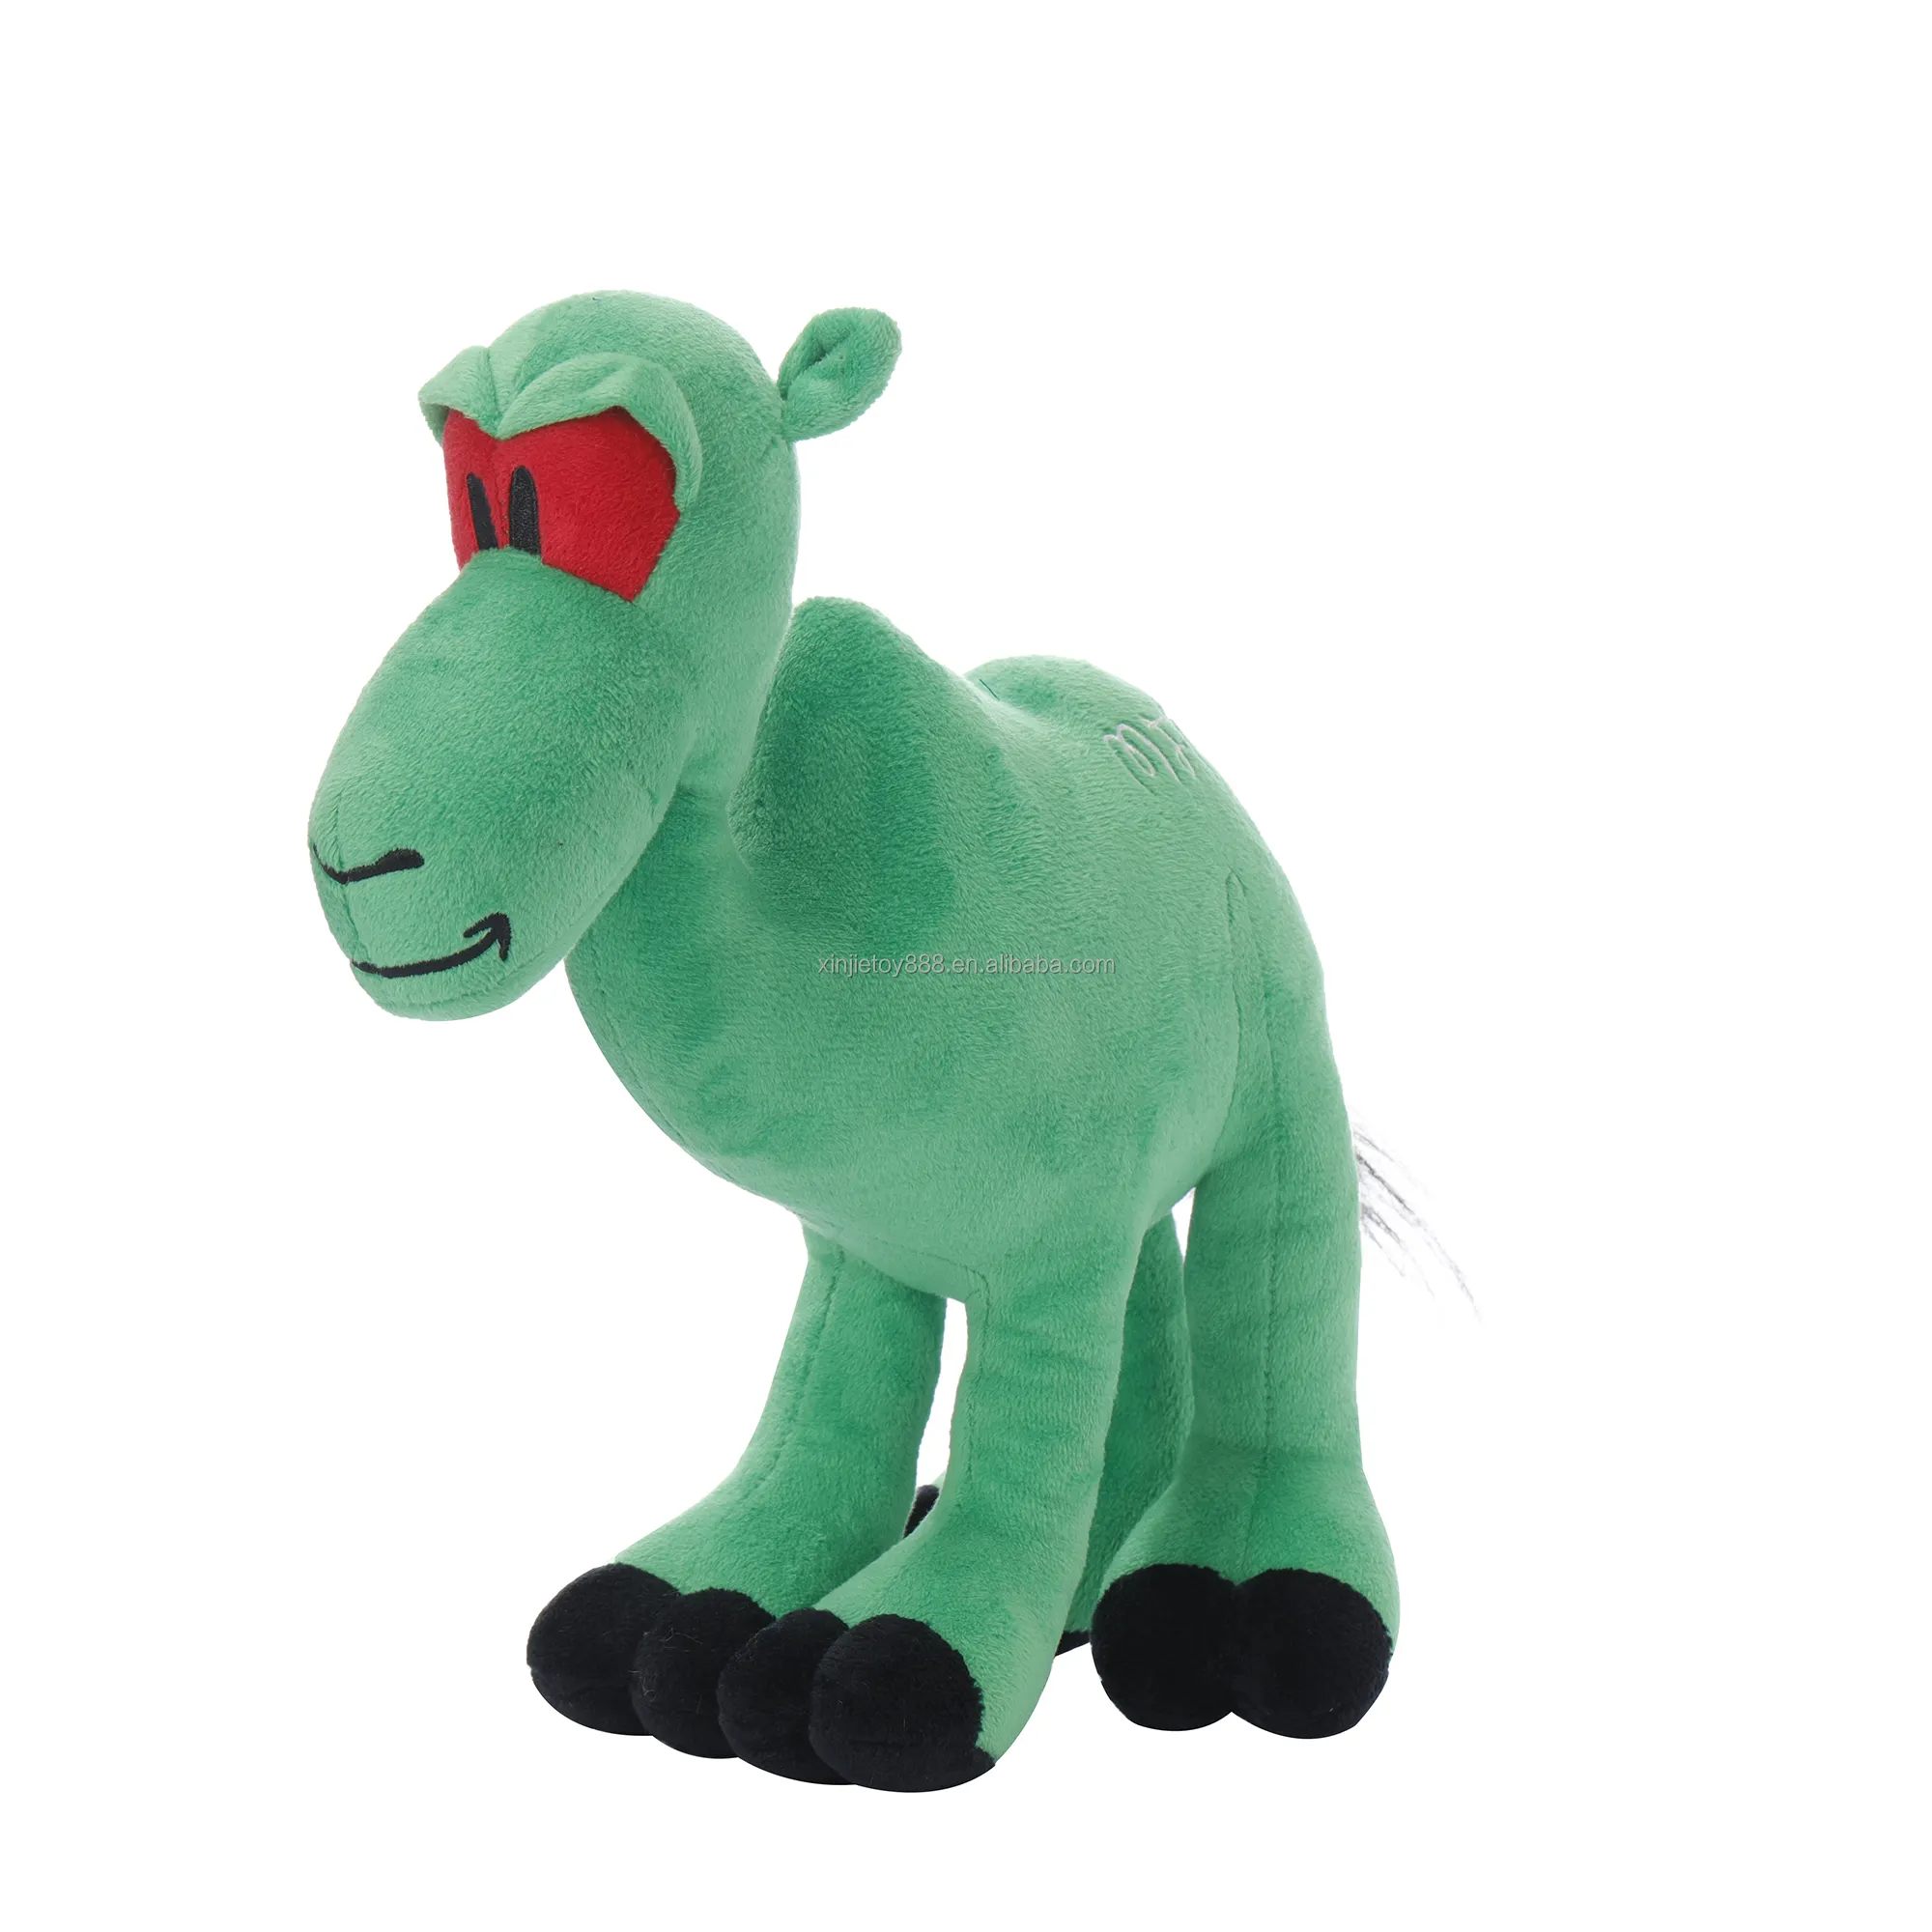 Kişiselleştirilmiş tasarım yeşil deve peluş oyuncak dolması özel hayvan oyuncaklar yumuşak hayvanlar oyuncak